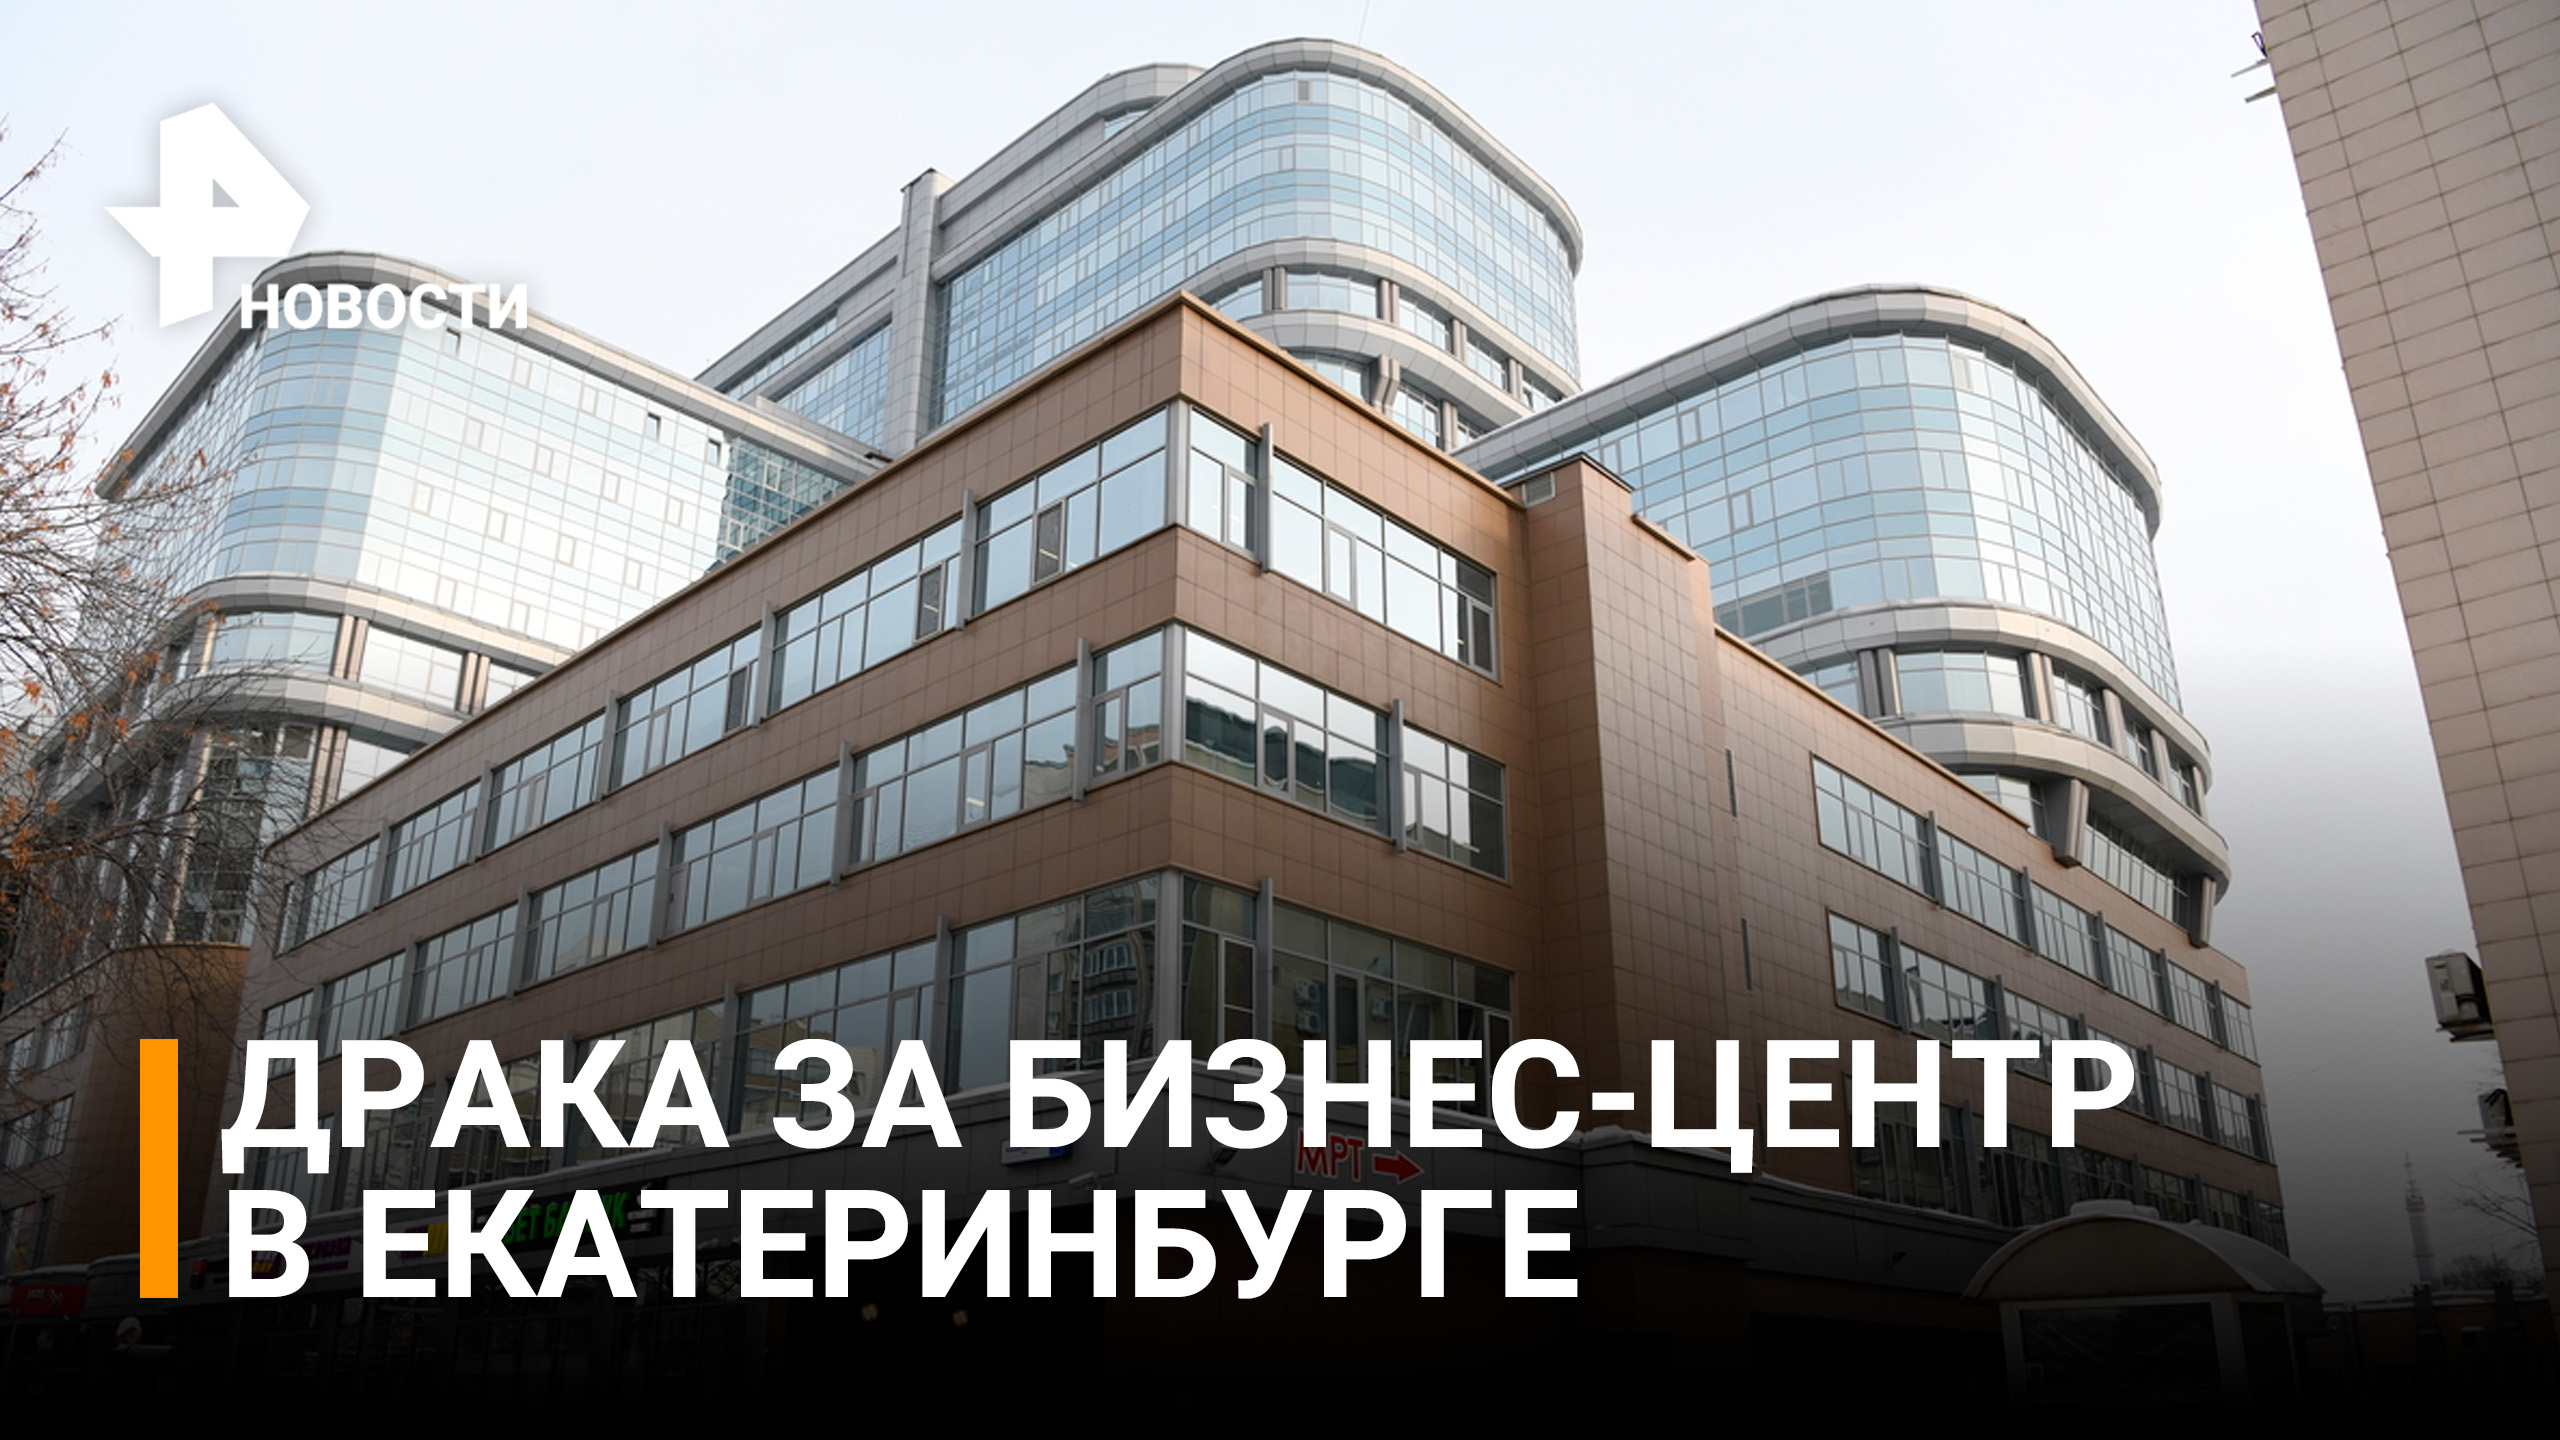 Как в лихие 90-е: спор за бизнес-центр между двумя УК в Екатеринбурге закончился дракой/ РЕН Новости